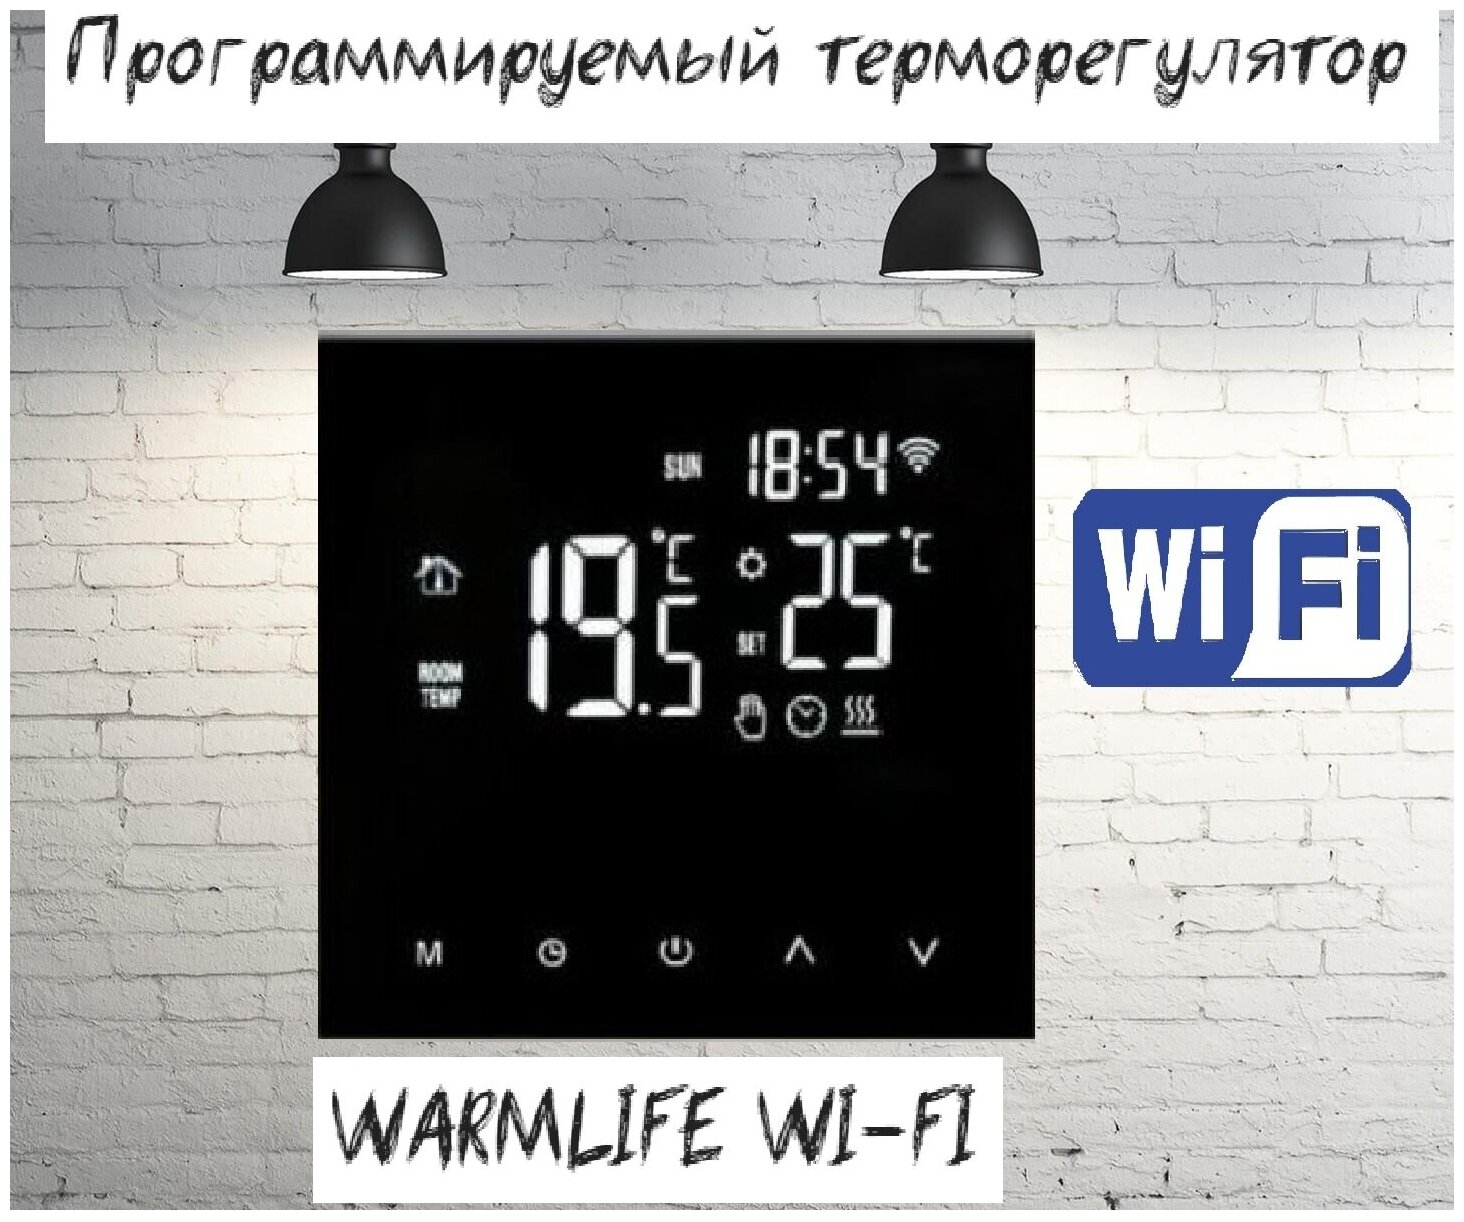 фото Терморегулятор программируемый warmlife ht17h3 wi-fi